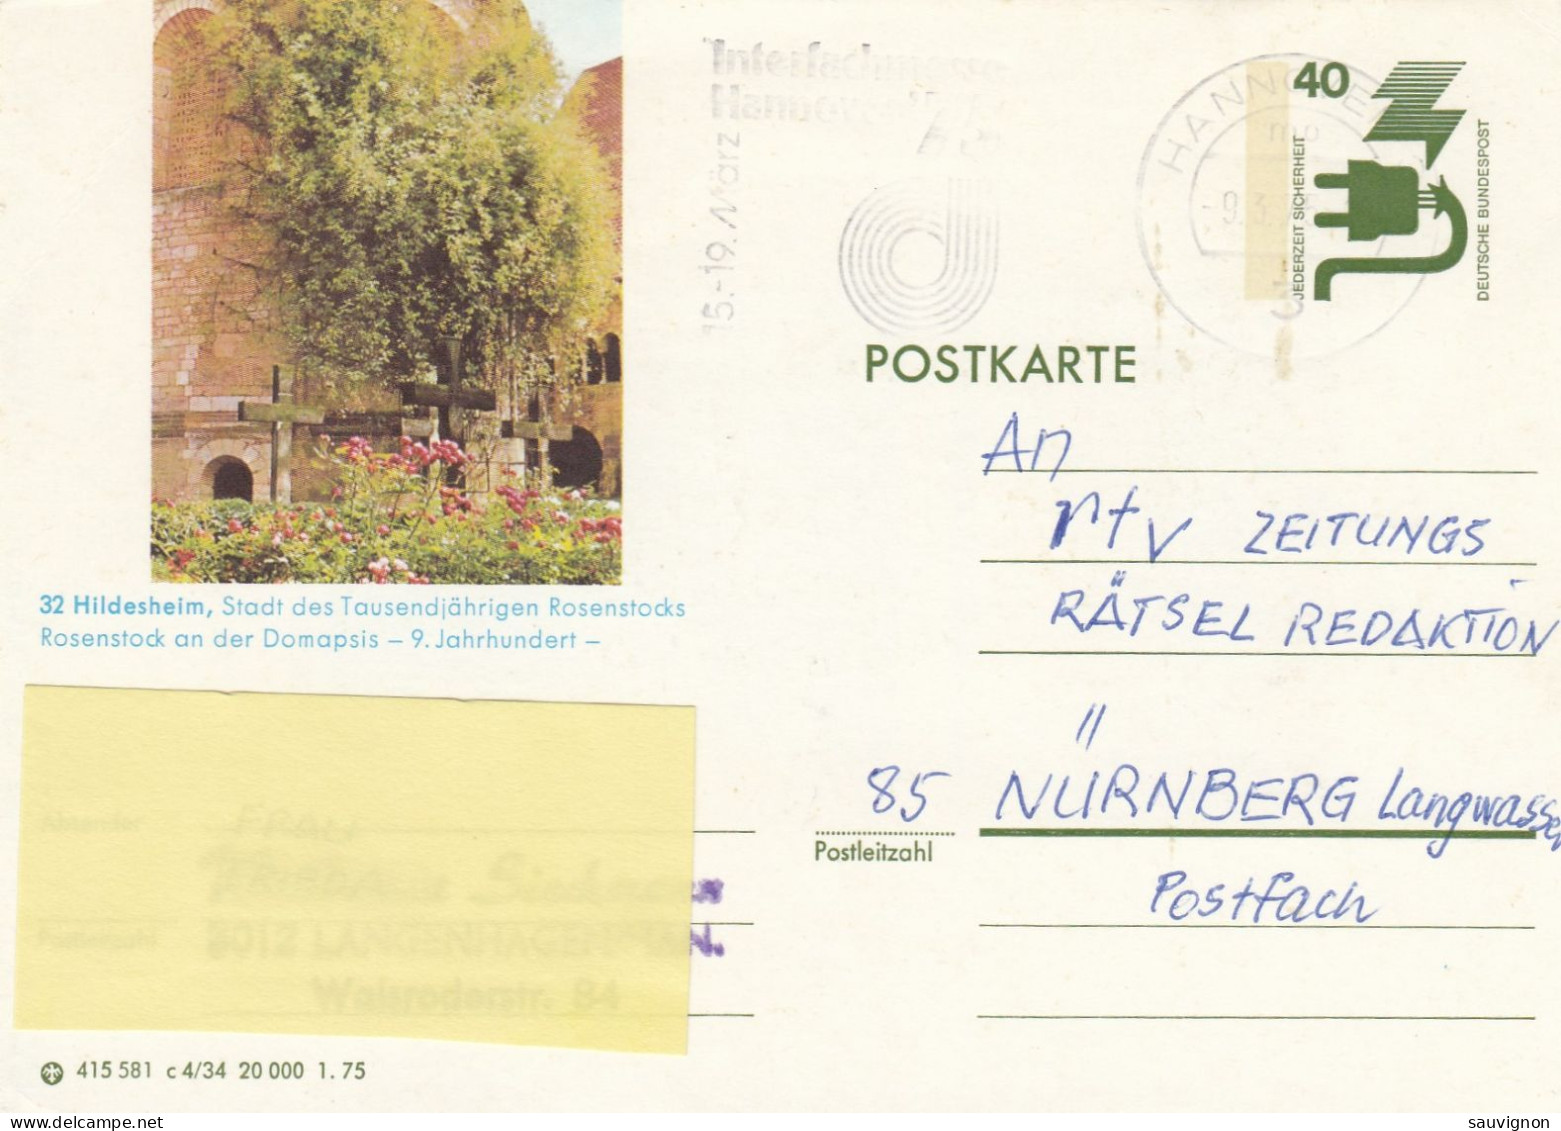 Deutschland. Bildpostkarte 32 HILDESHEIM, 1000-jähriger Rosenstock, Wertstempel 40 Pfg. Unfallverhütung, Serie "c" - Illustrated Postcards - Used